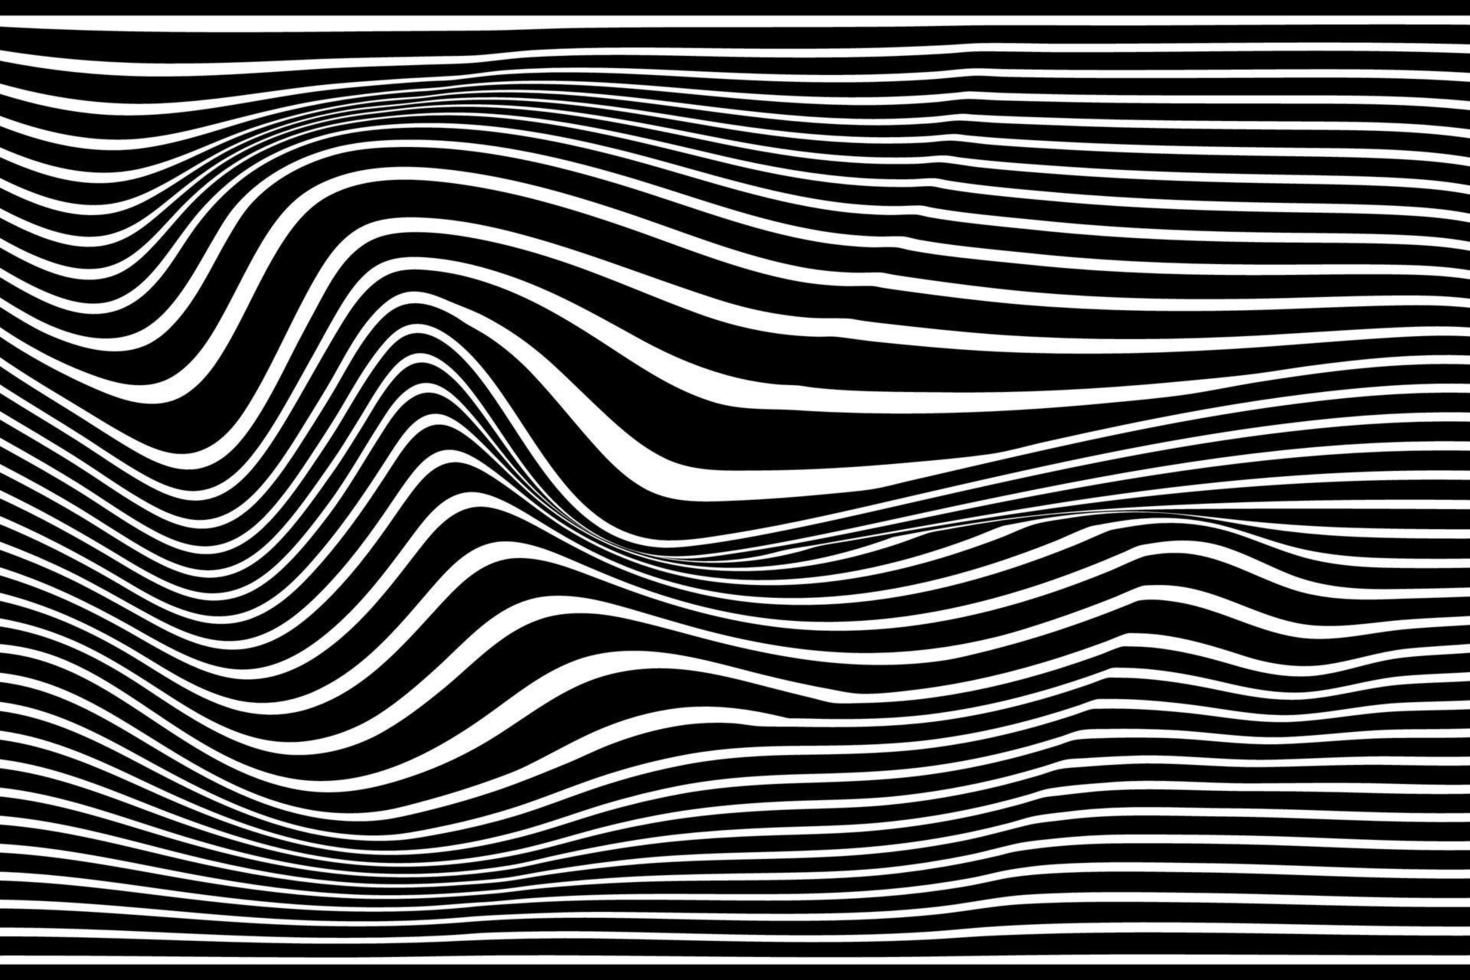 svart och vit abstrakt Vinka linje rand bakgrund. op konst optisk illusion vågig randig vektor illustration.